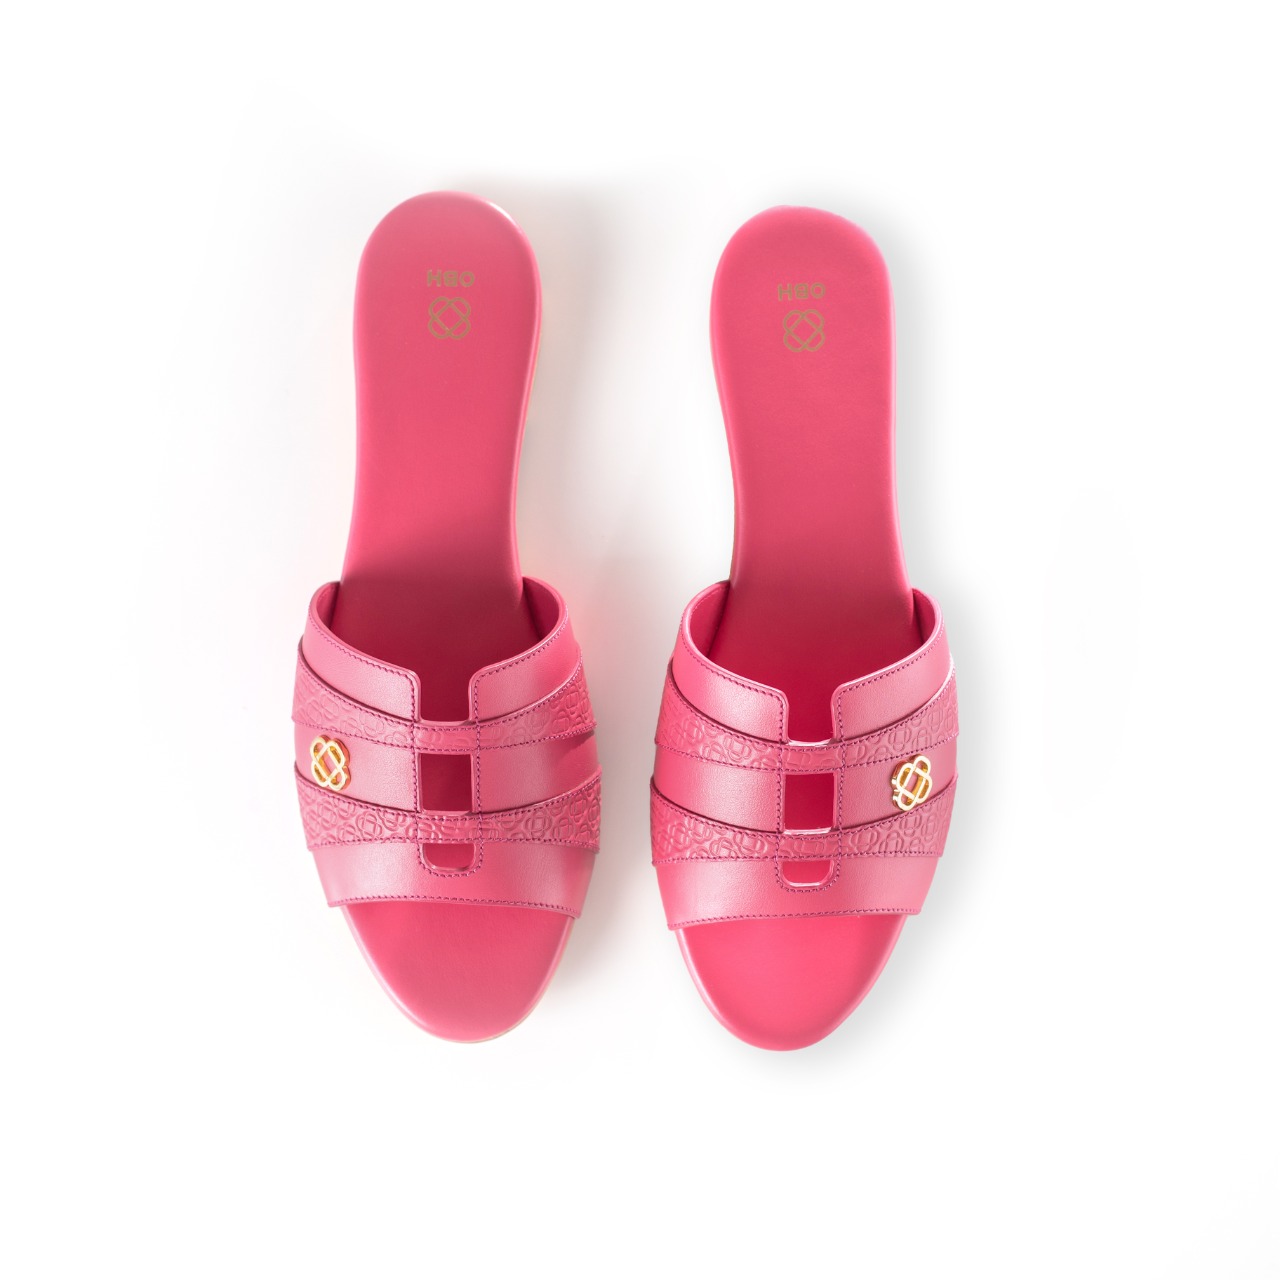 Buy OBH Ladies Sandal 8 Model Pink Color Online in UAE | OBH Collection